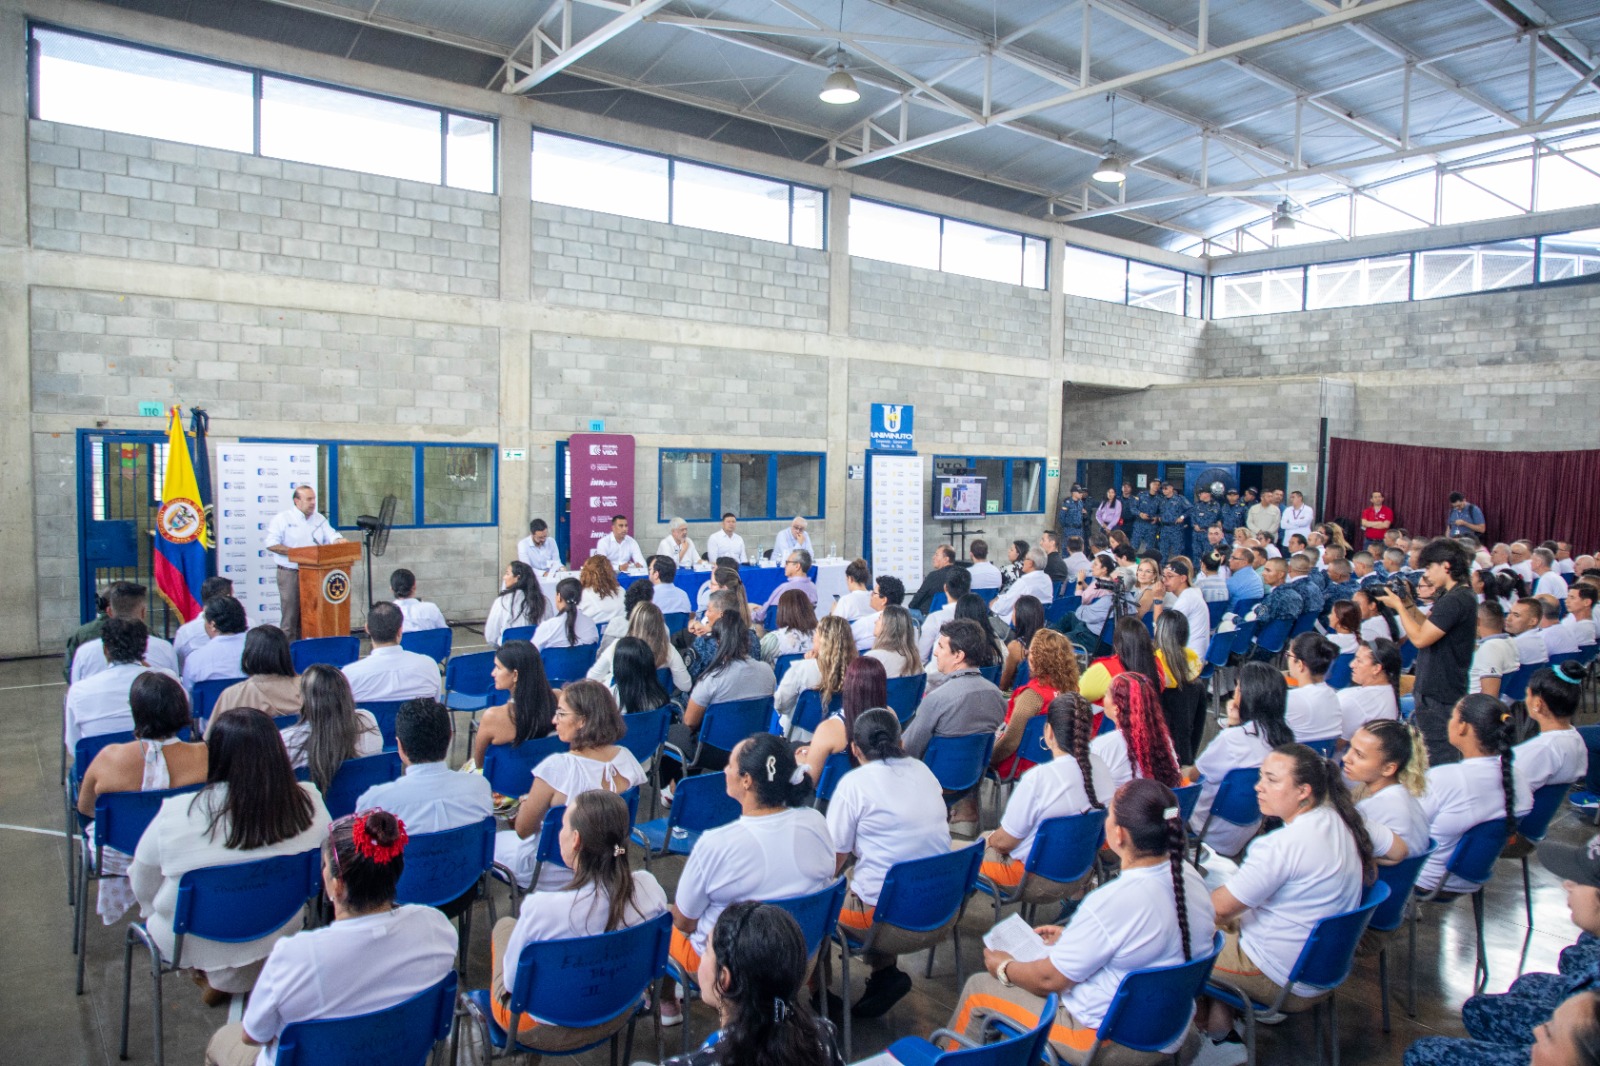 Viceministro de Justicia estuvo en el Coiba de Picaleña inaugurando el programa de resocialización 6